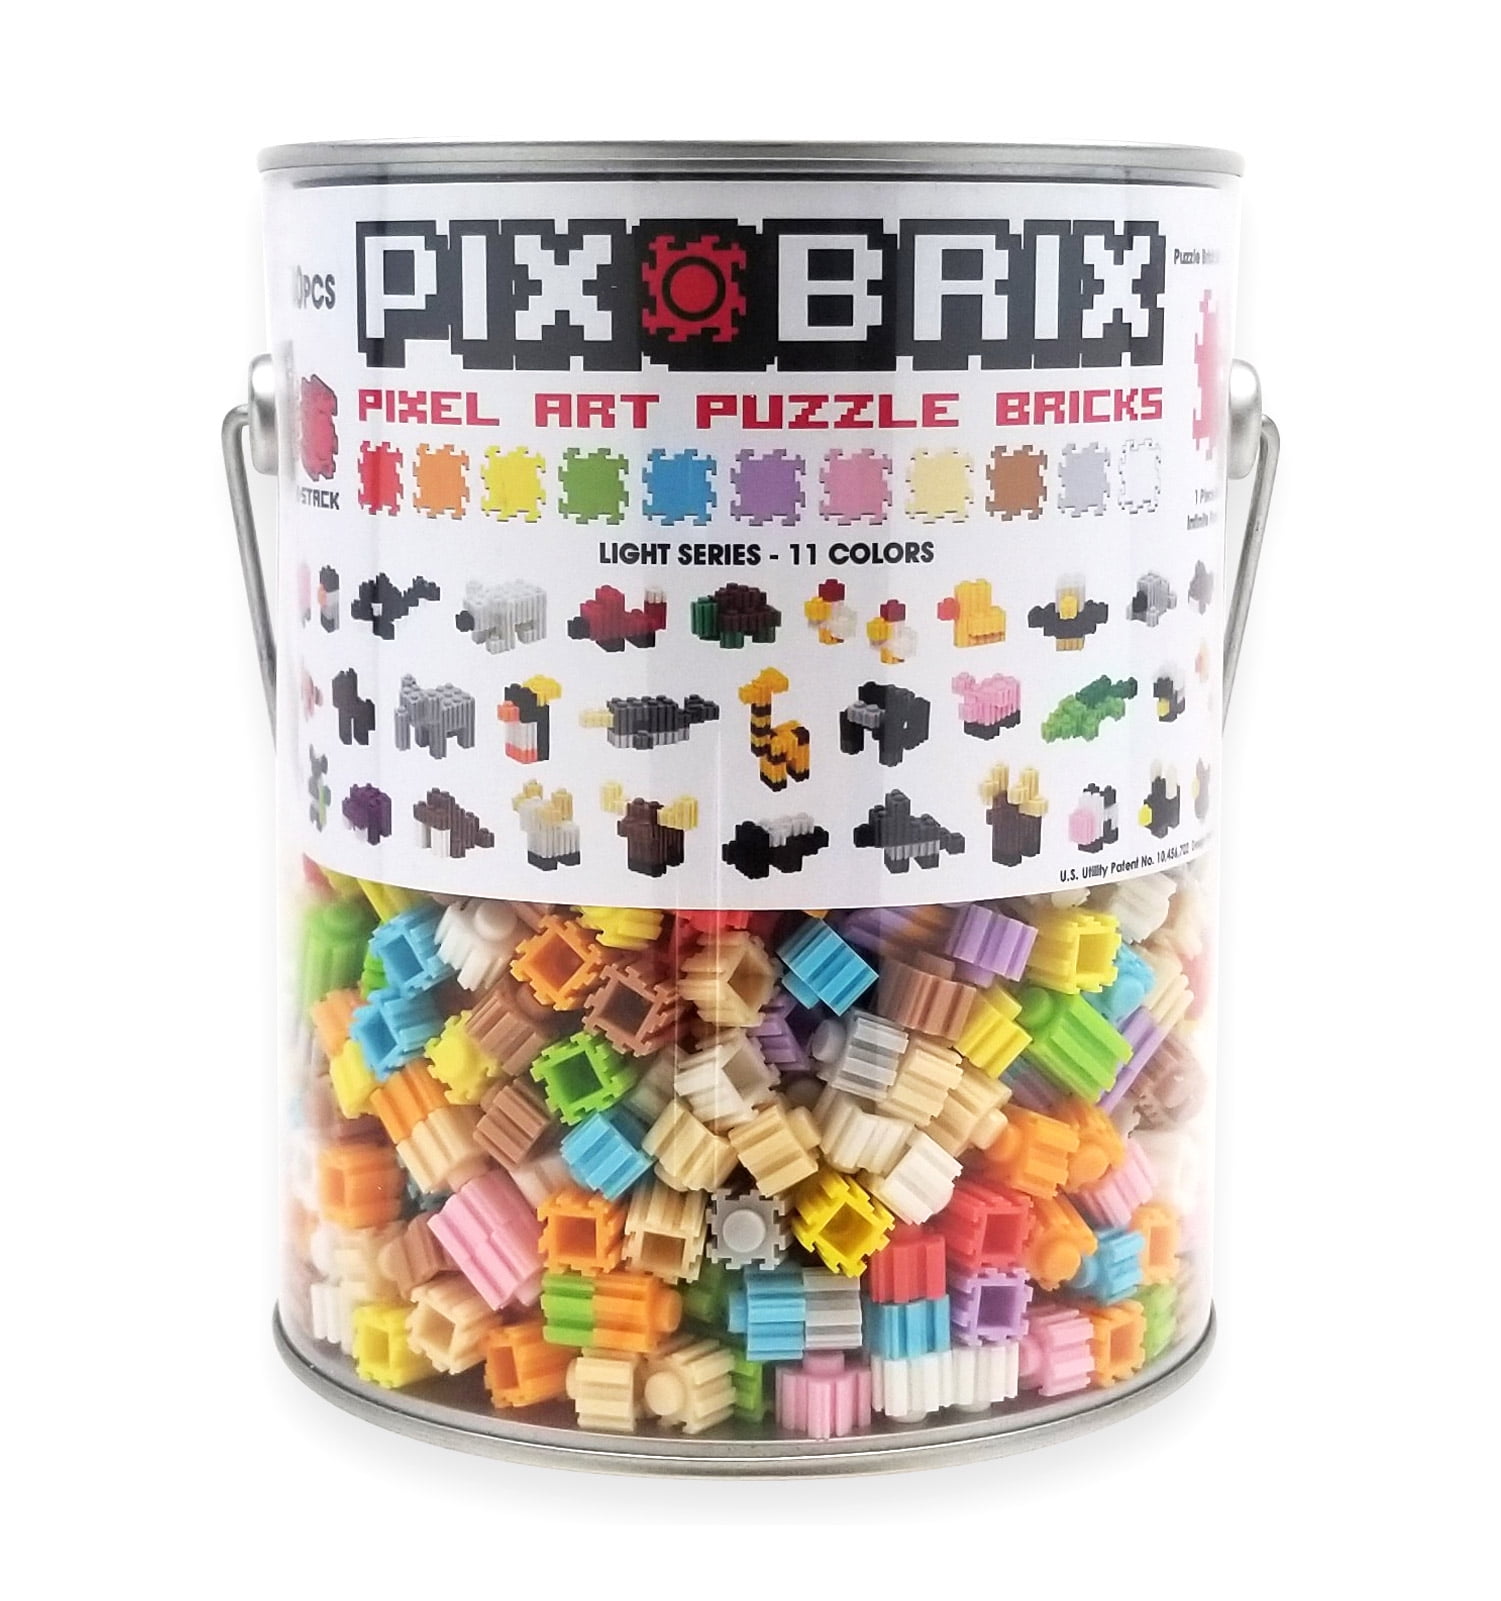 Pix Brix Pixel Art Puzzle Bricks Paint Can – 1,500 Piece Pixel Art Kit with  11 Colors, Light Palette – Patented Interlocking Building Bricks, Create 